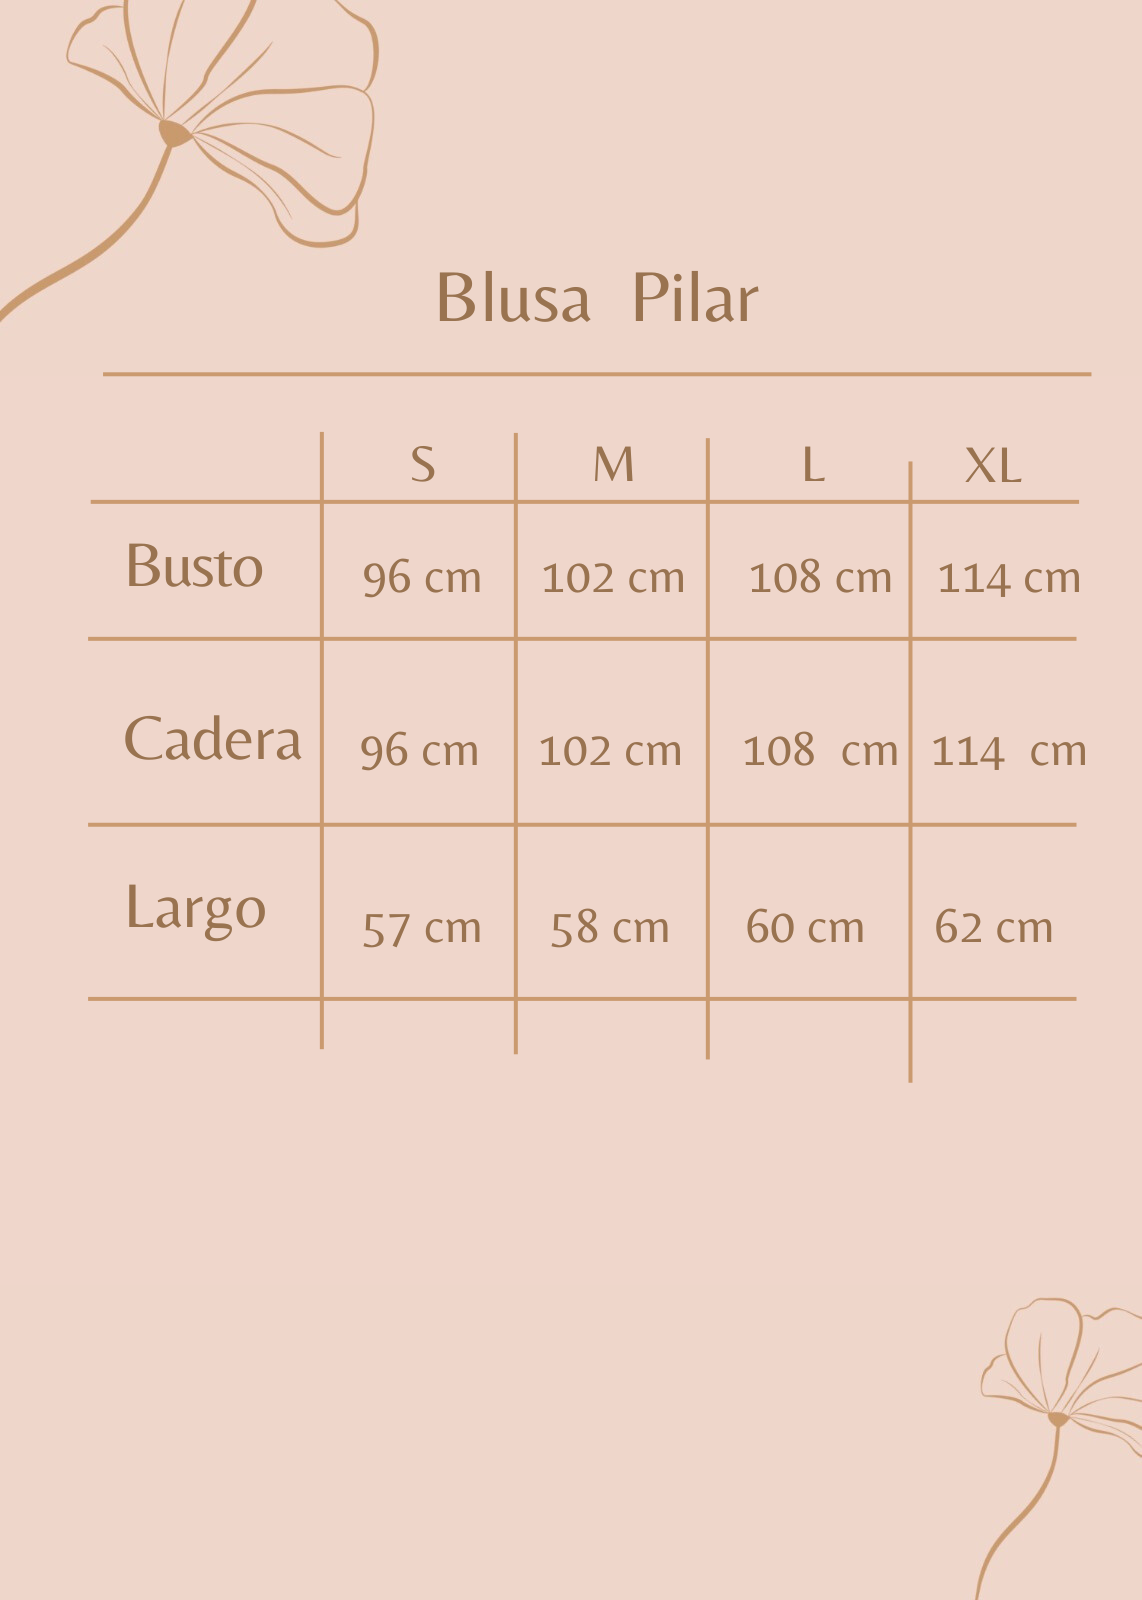 Blusa Pilar